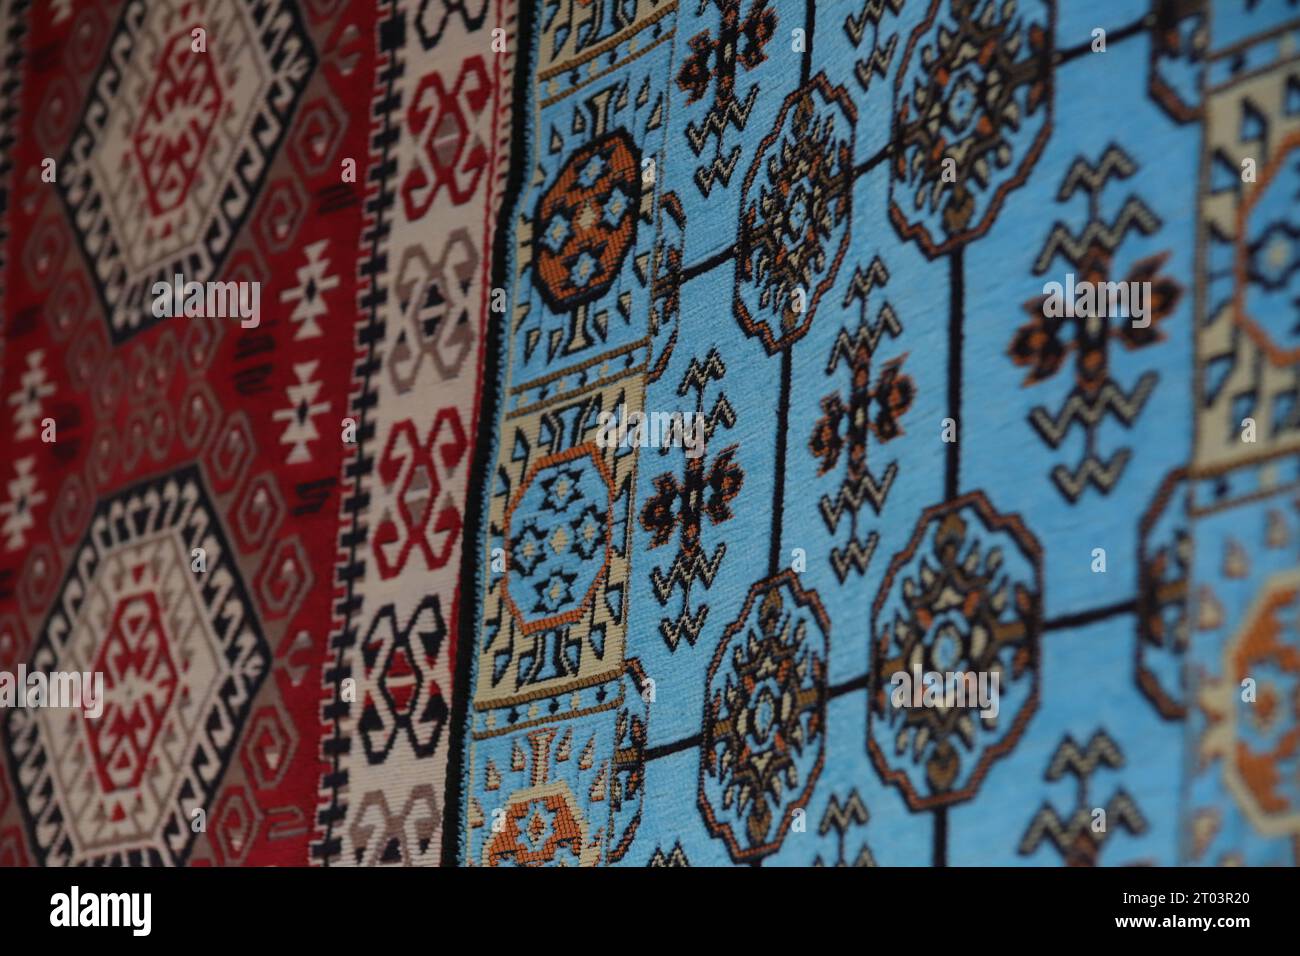 Zwei wunderschöne, mit ethnischen Mustern versehene Teppiche, ein blauer und ein roter Teppich, hängen an einer Wand, die in den Straßen des Gjirokaster Baazar in Albanien ausgestellt wird. Stockfoto